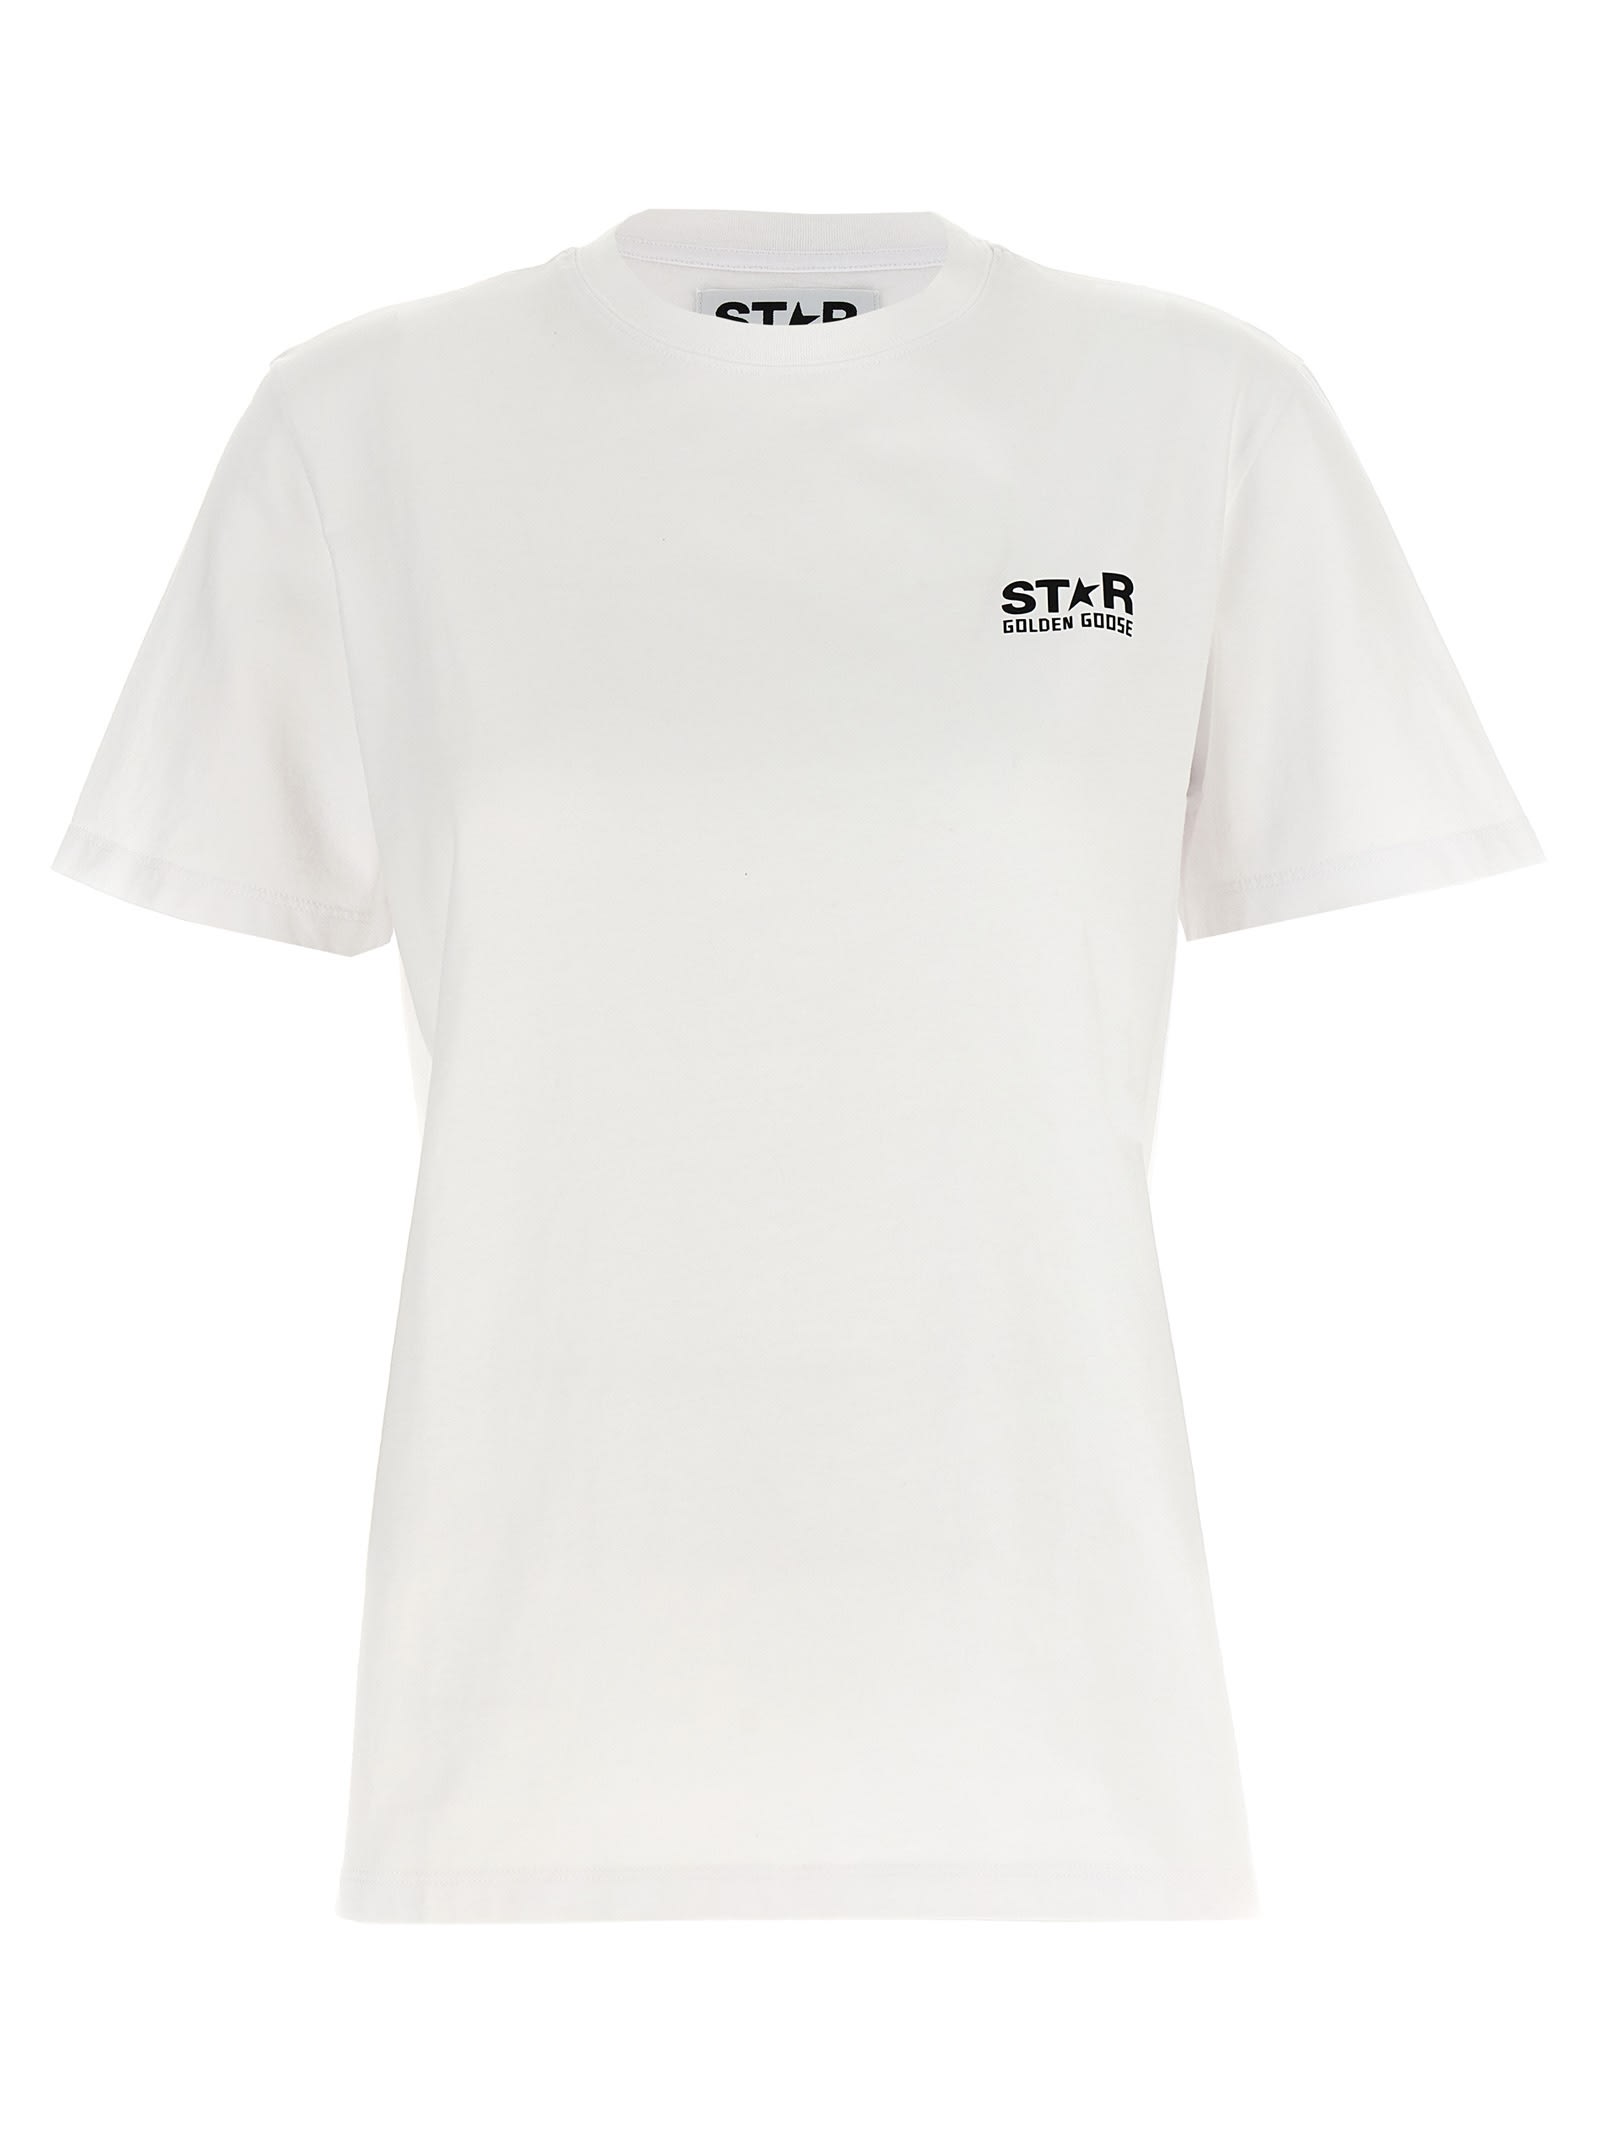 Golden Goose Star T-shirt In White/black